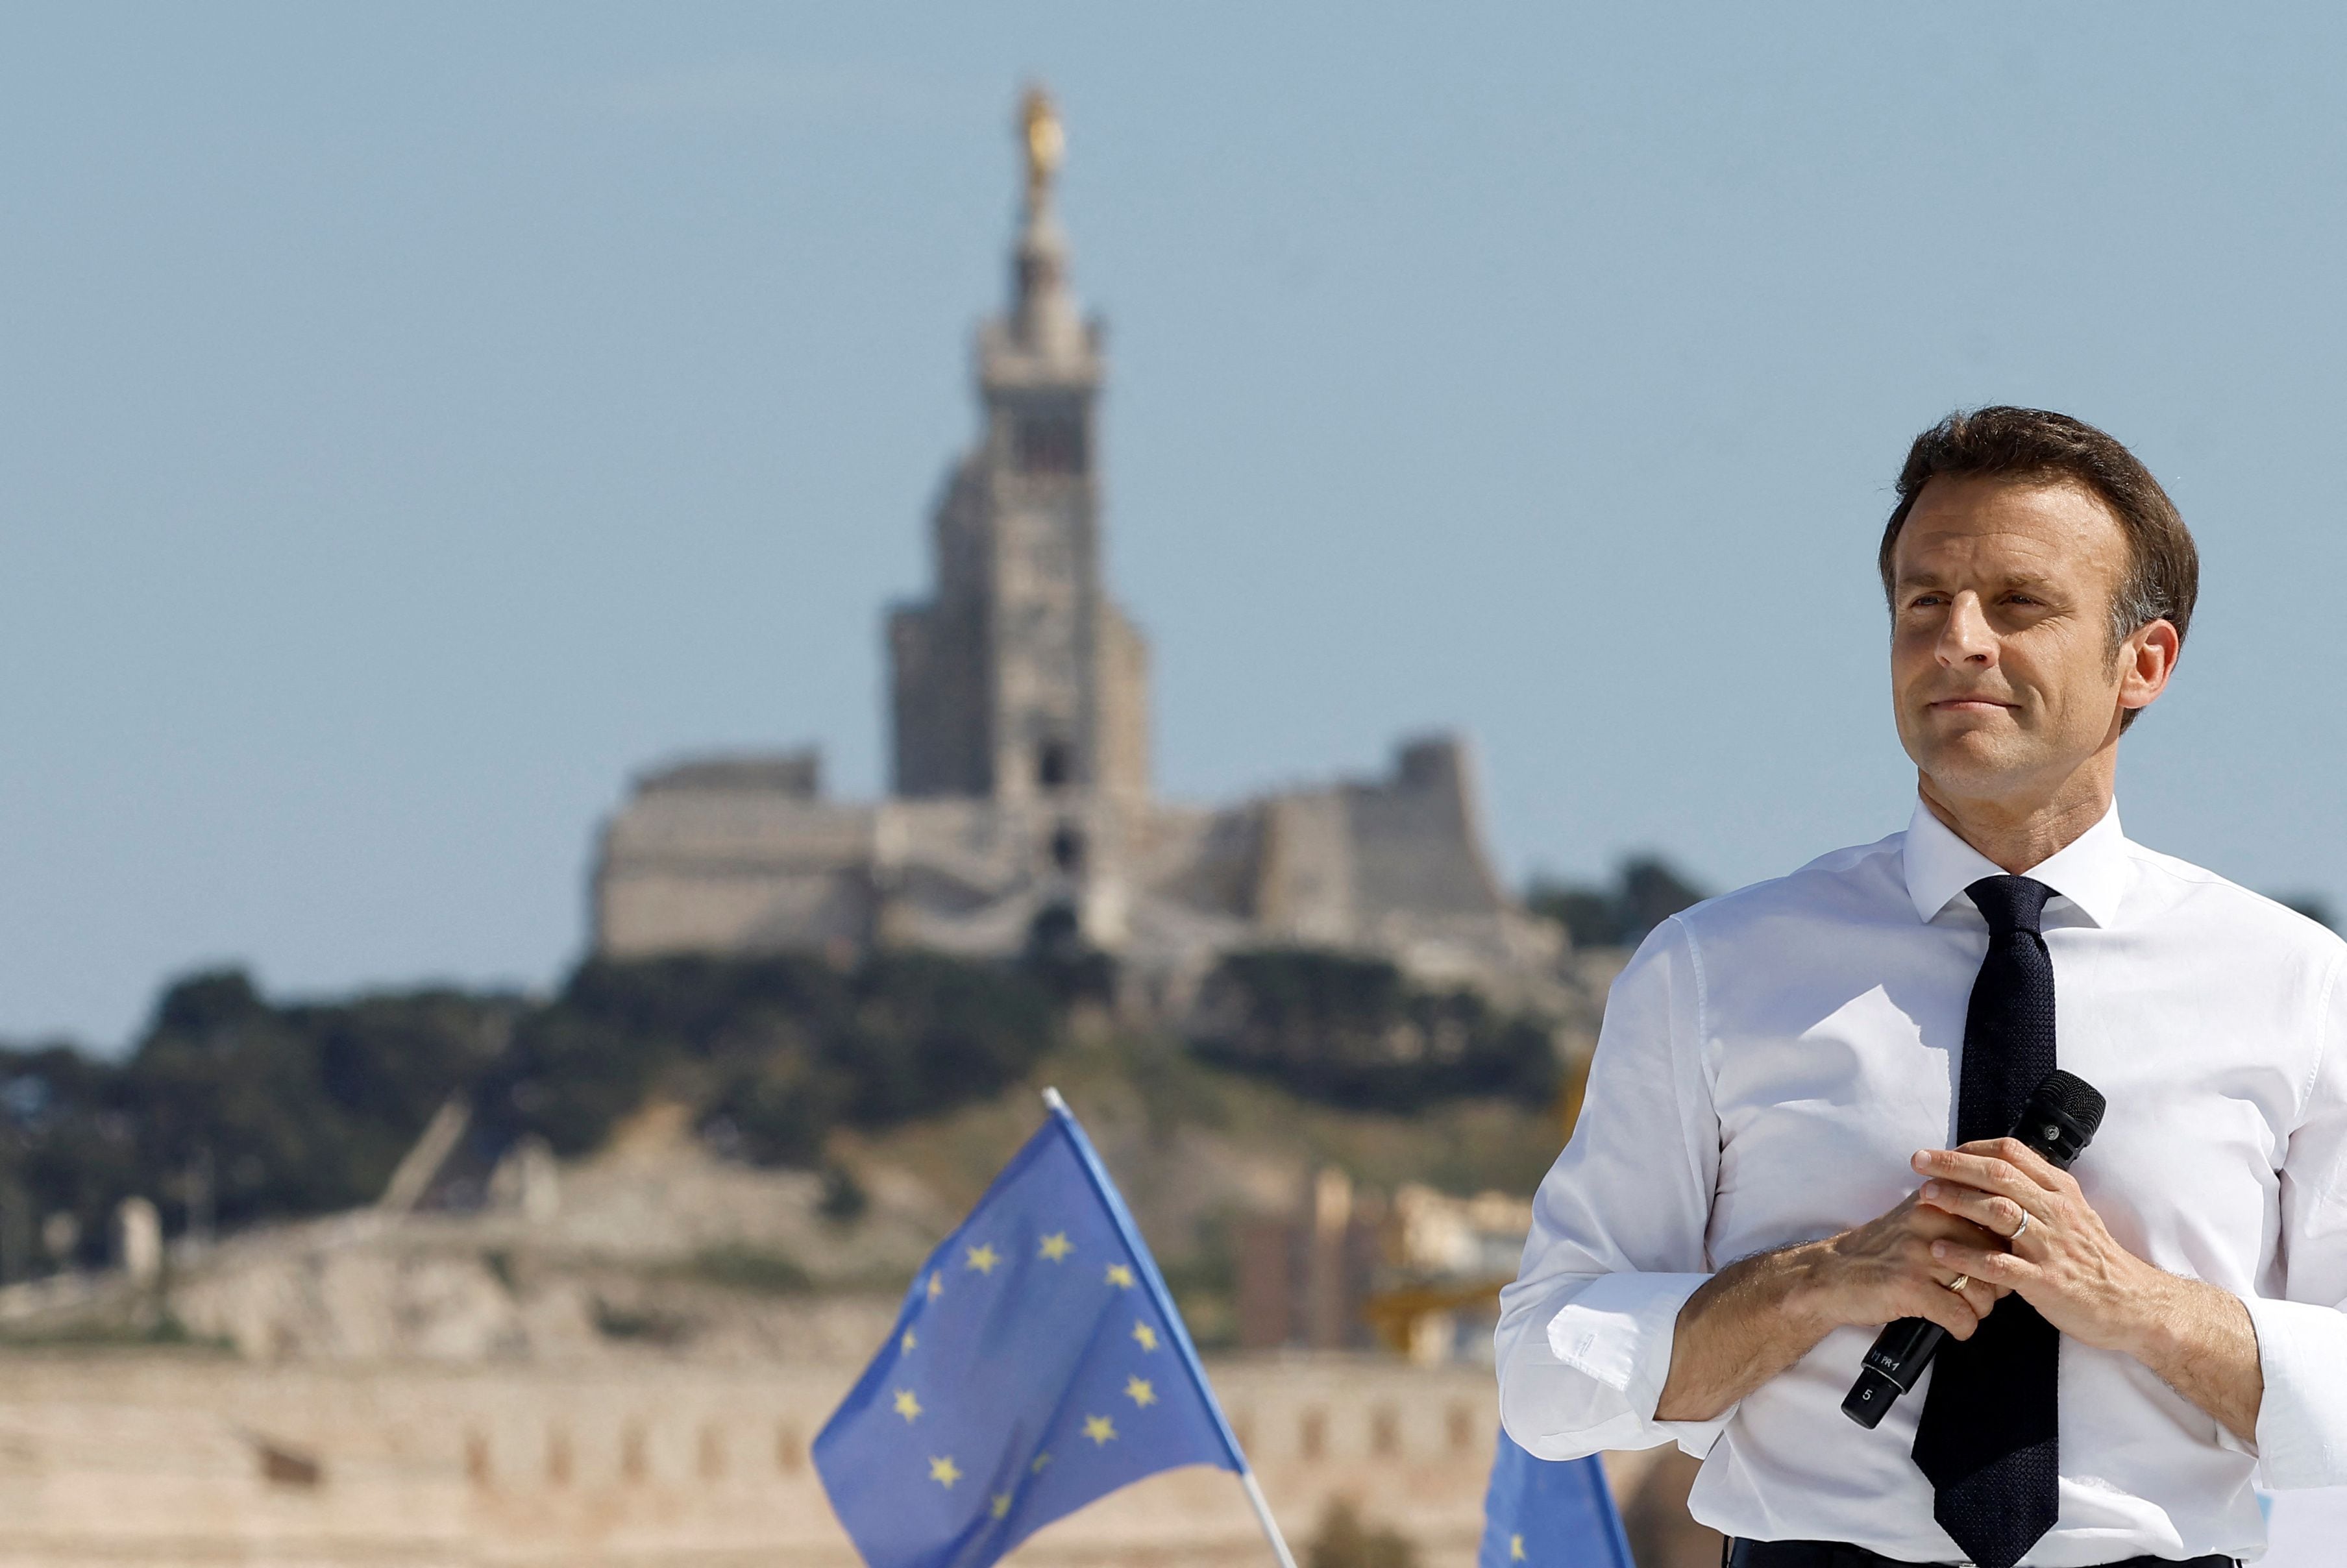 El presidente Emmanuel Macron encabeza las encuestas a pocos días del ballotage en Francia (REUTERS/Christian Hartmann)